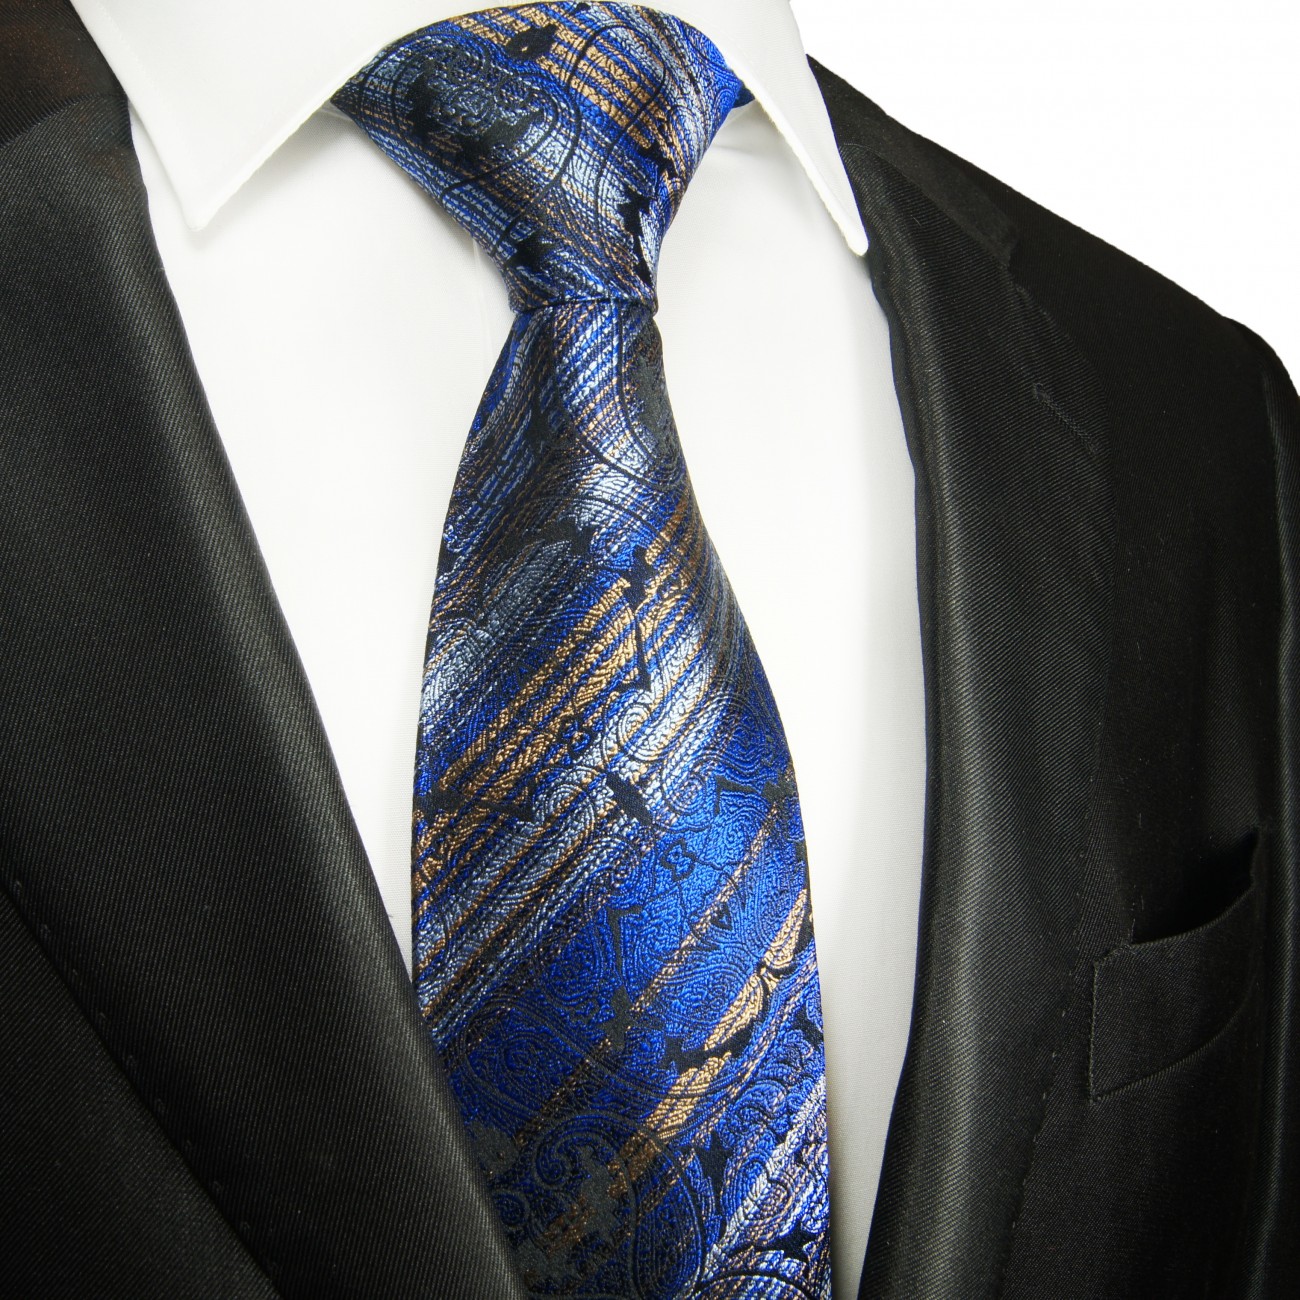 Extra lange Krawatte 165cm - Krawatte blau gestreift